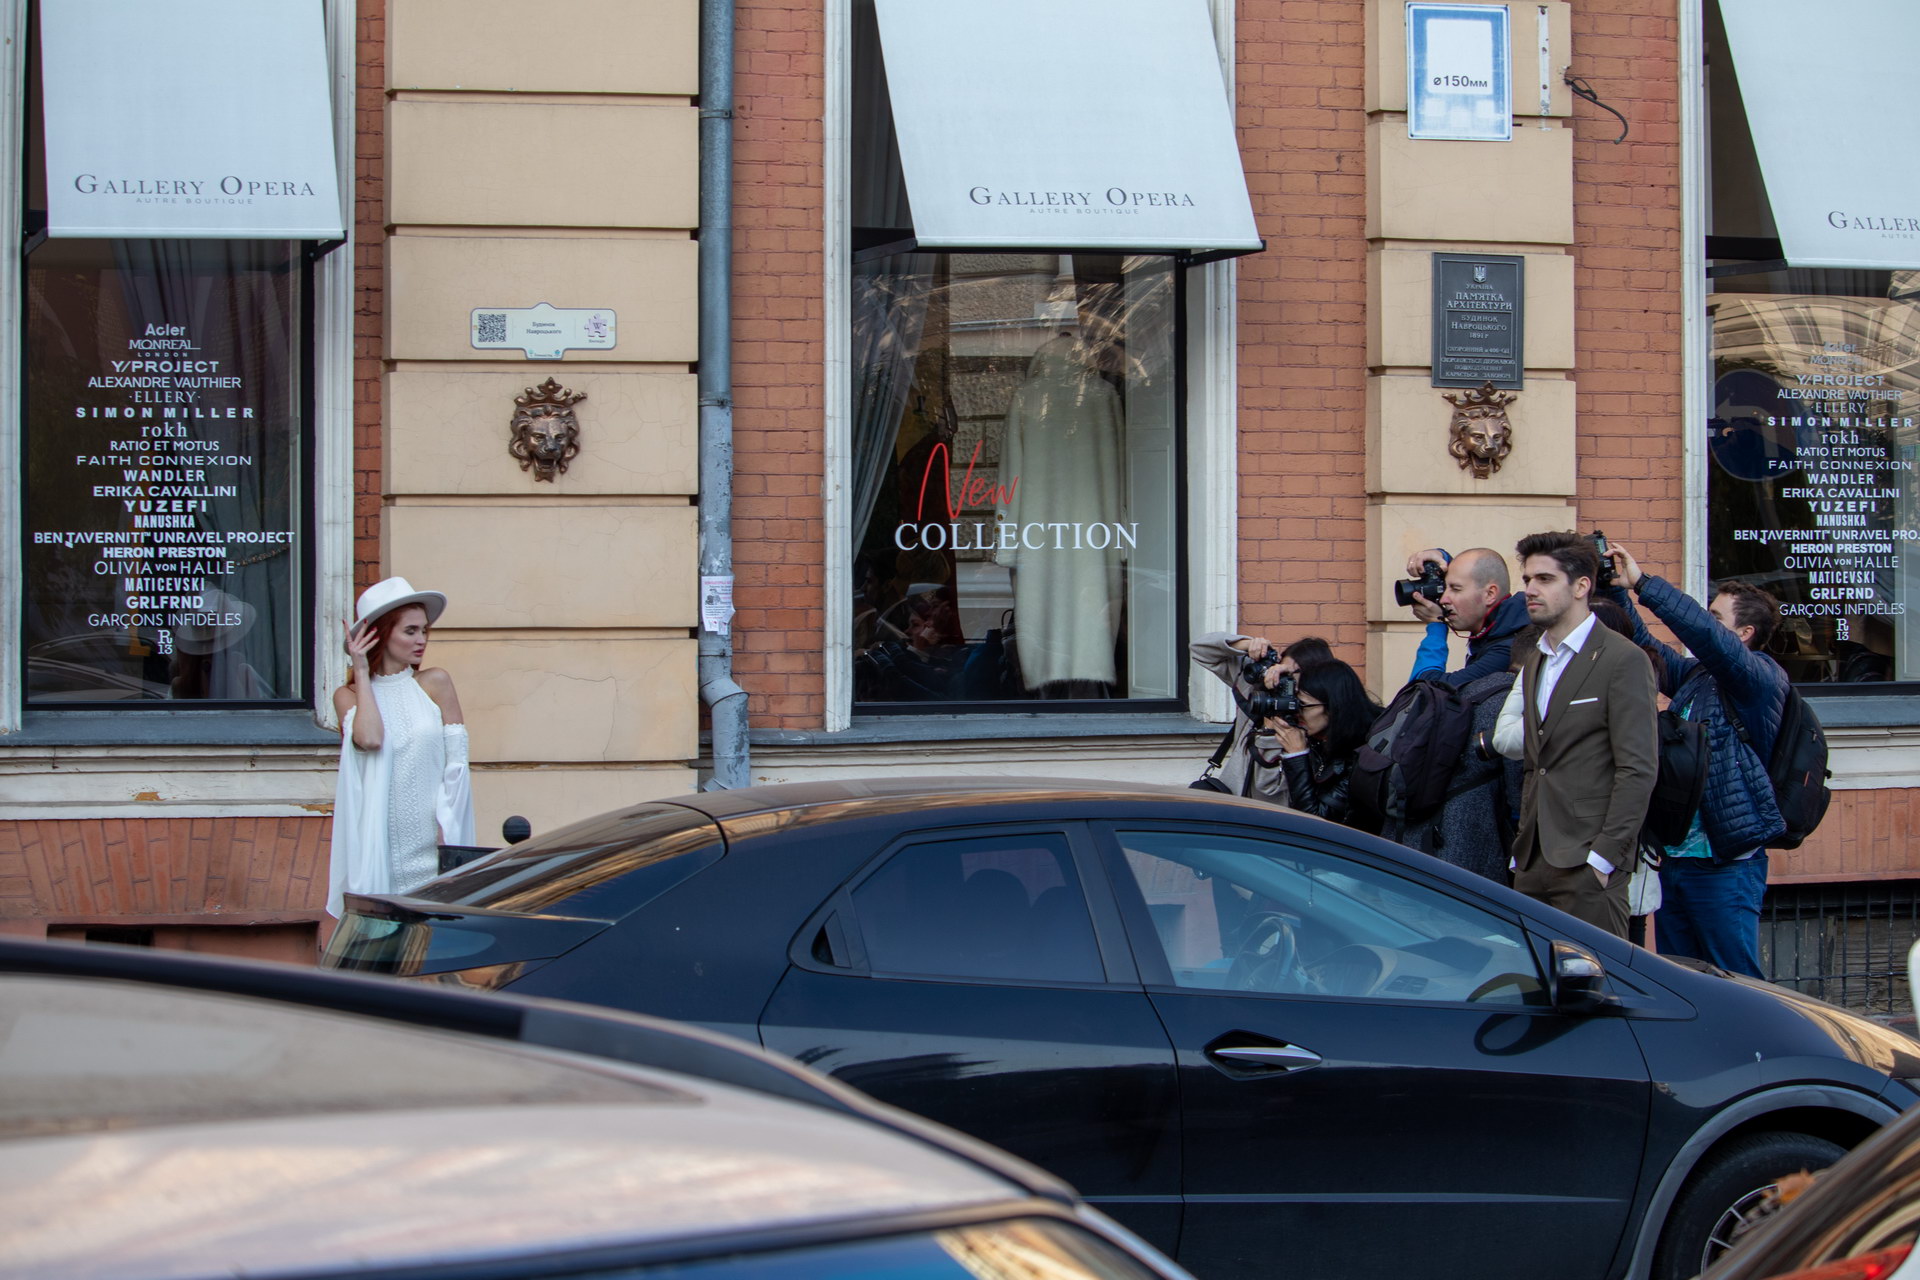 Девушка в белом платье и шляпе позирует для фотографов в центре Одессы около оперного театра – bur4ik.ru – 21.01.2020 - фото 12